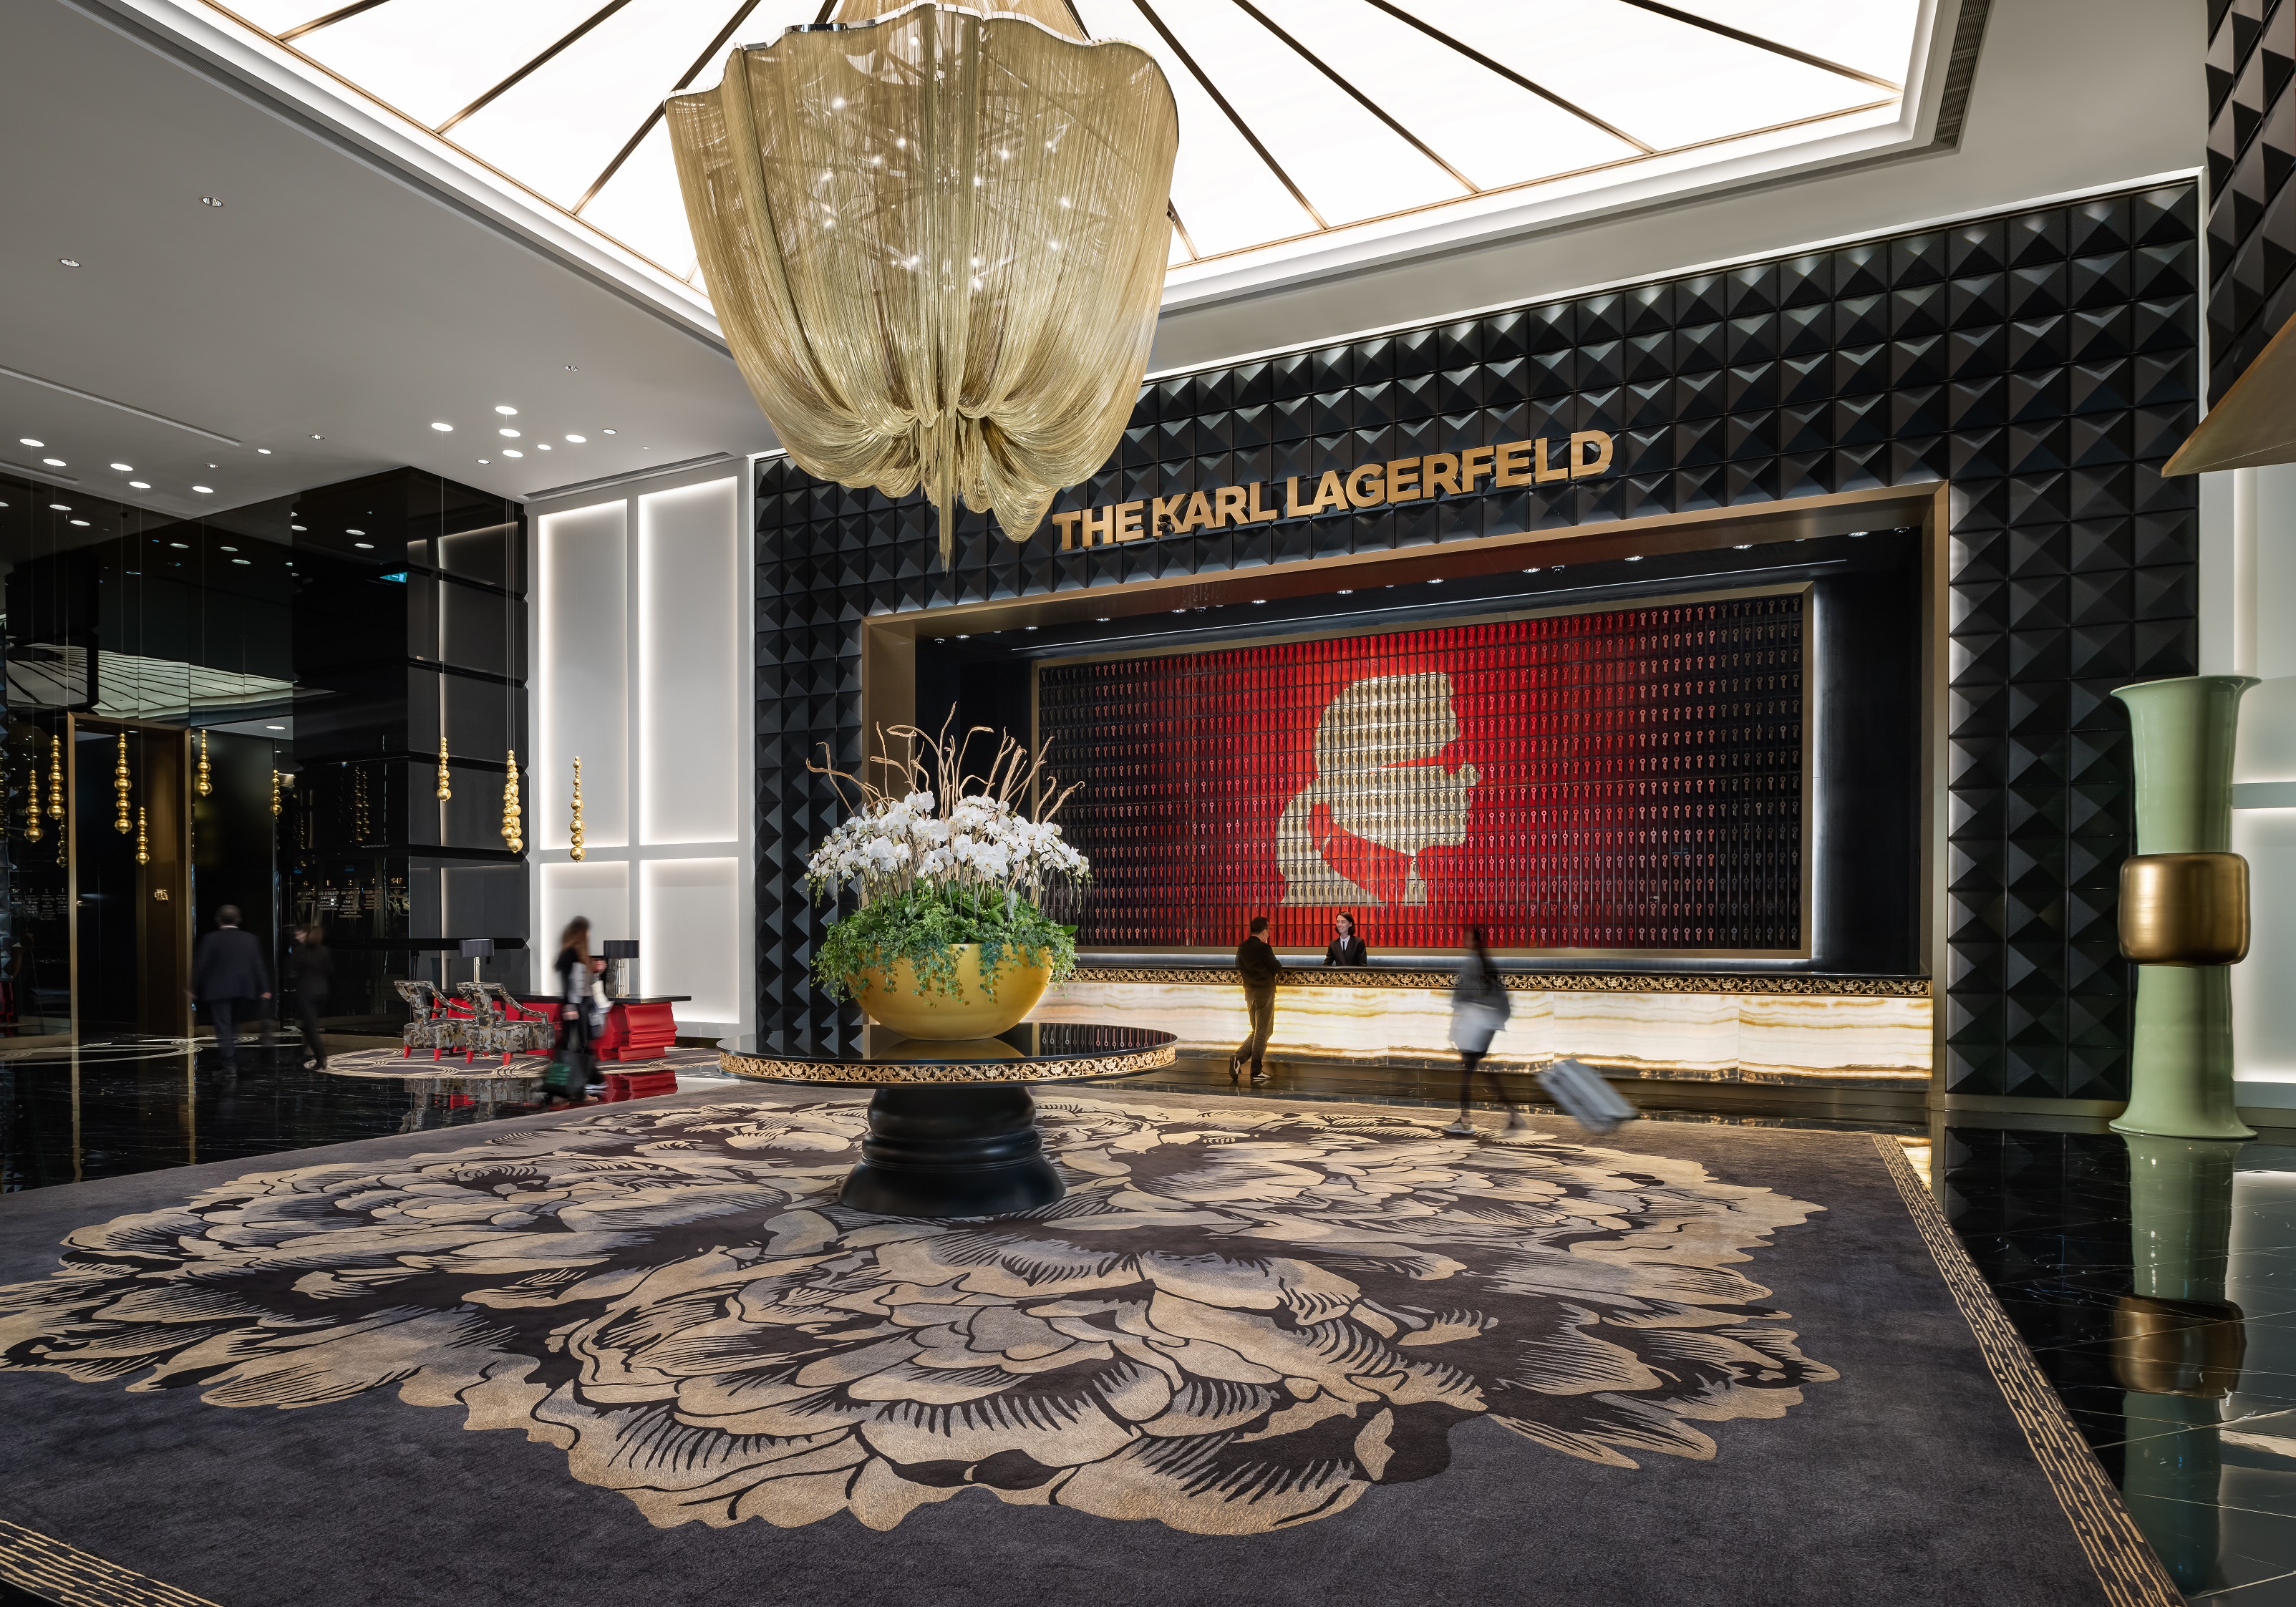 澳门卡尔拉格斐奢华酒店大楼开业首年 荣膺2023年“福布斯旅游指南”两项五星荣誉